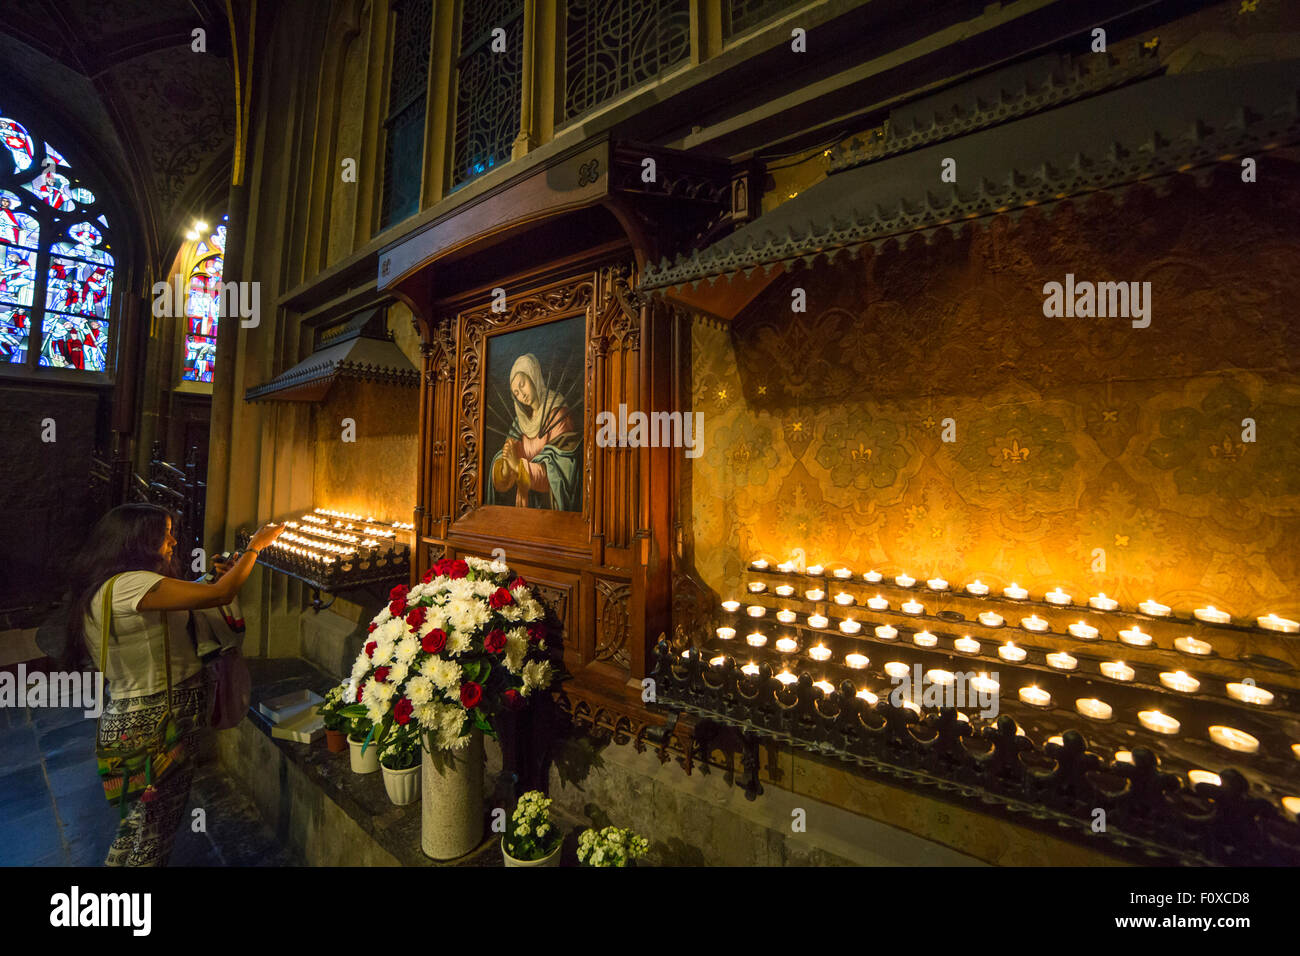 La dévotion dans la cathédrale d'Aix, femme allumant une bougie avec une peinture de la Vierge Marie, Allemagne Banque D'Images